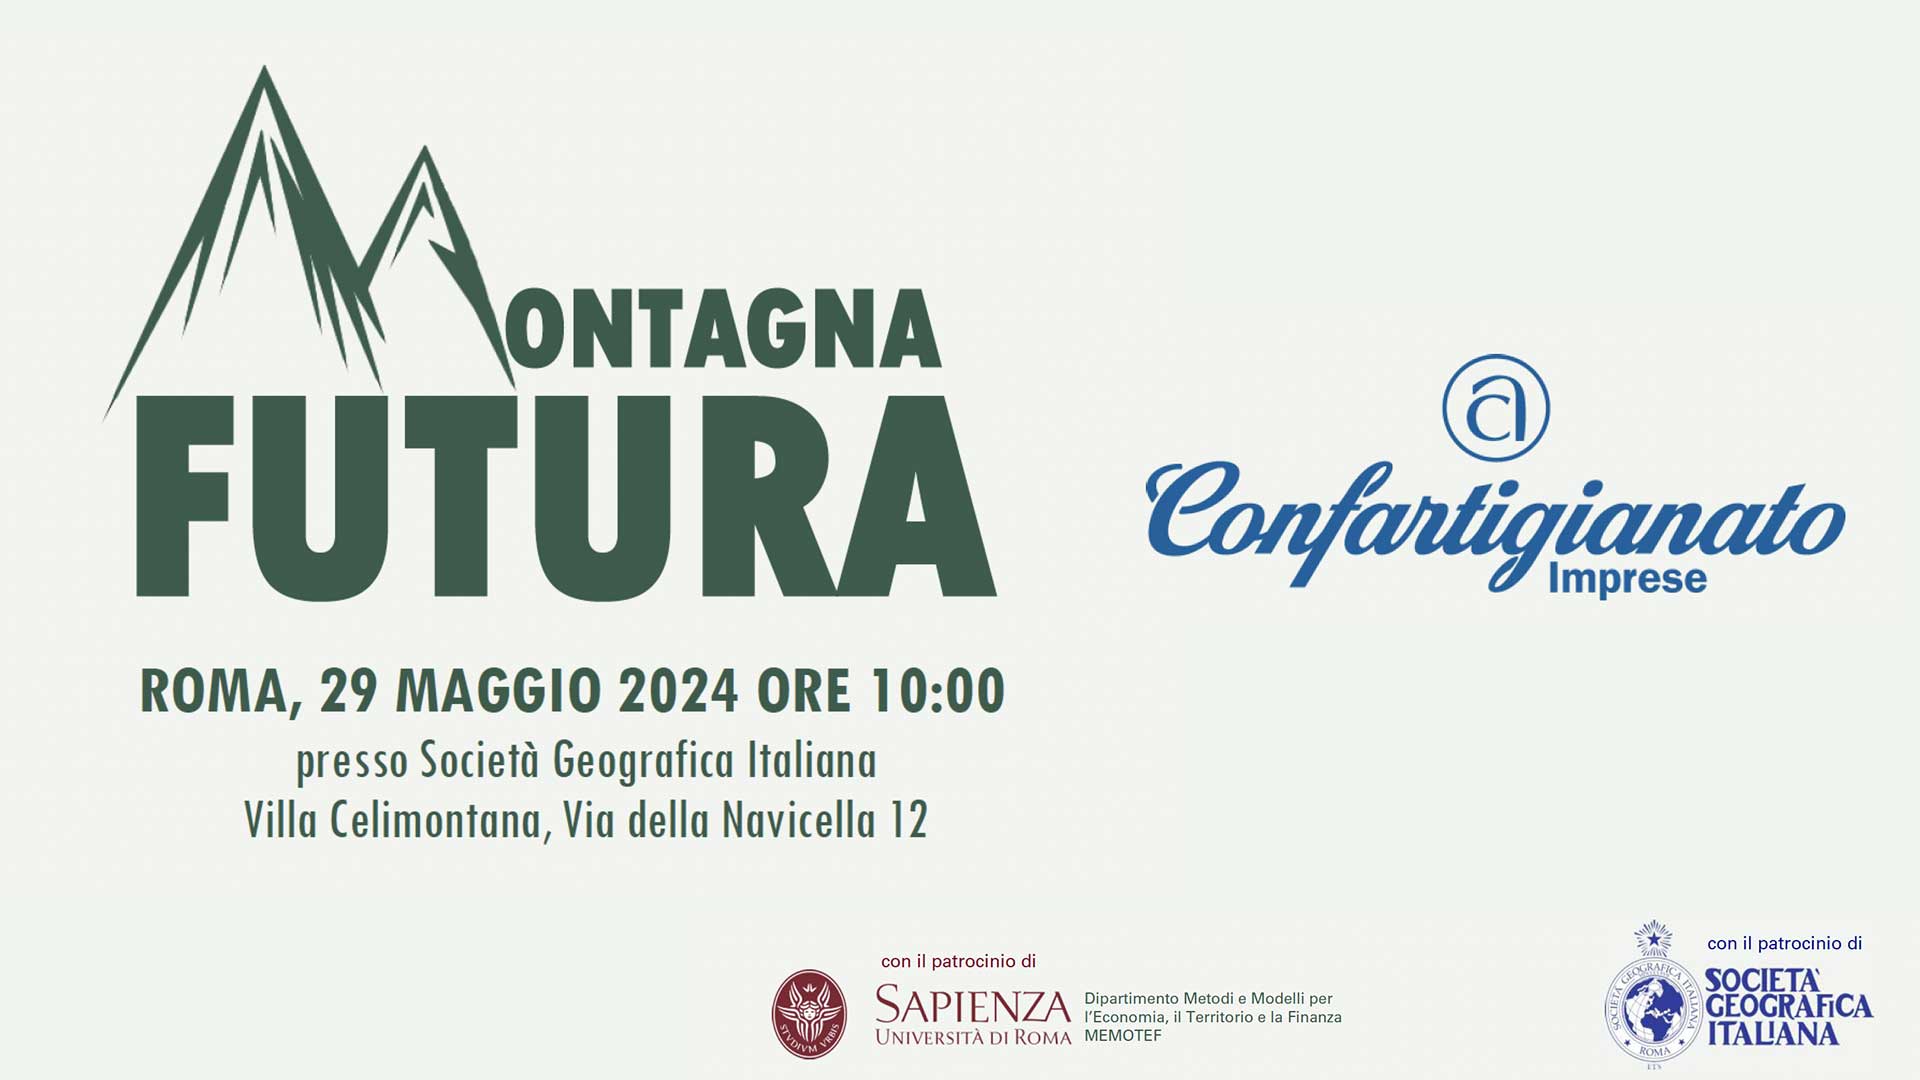 EVENTO – Convegno conclusivo "Montagna Futura": il 29 maggio alla Società Italiana Geografica di Roma